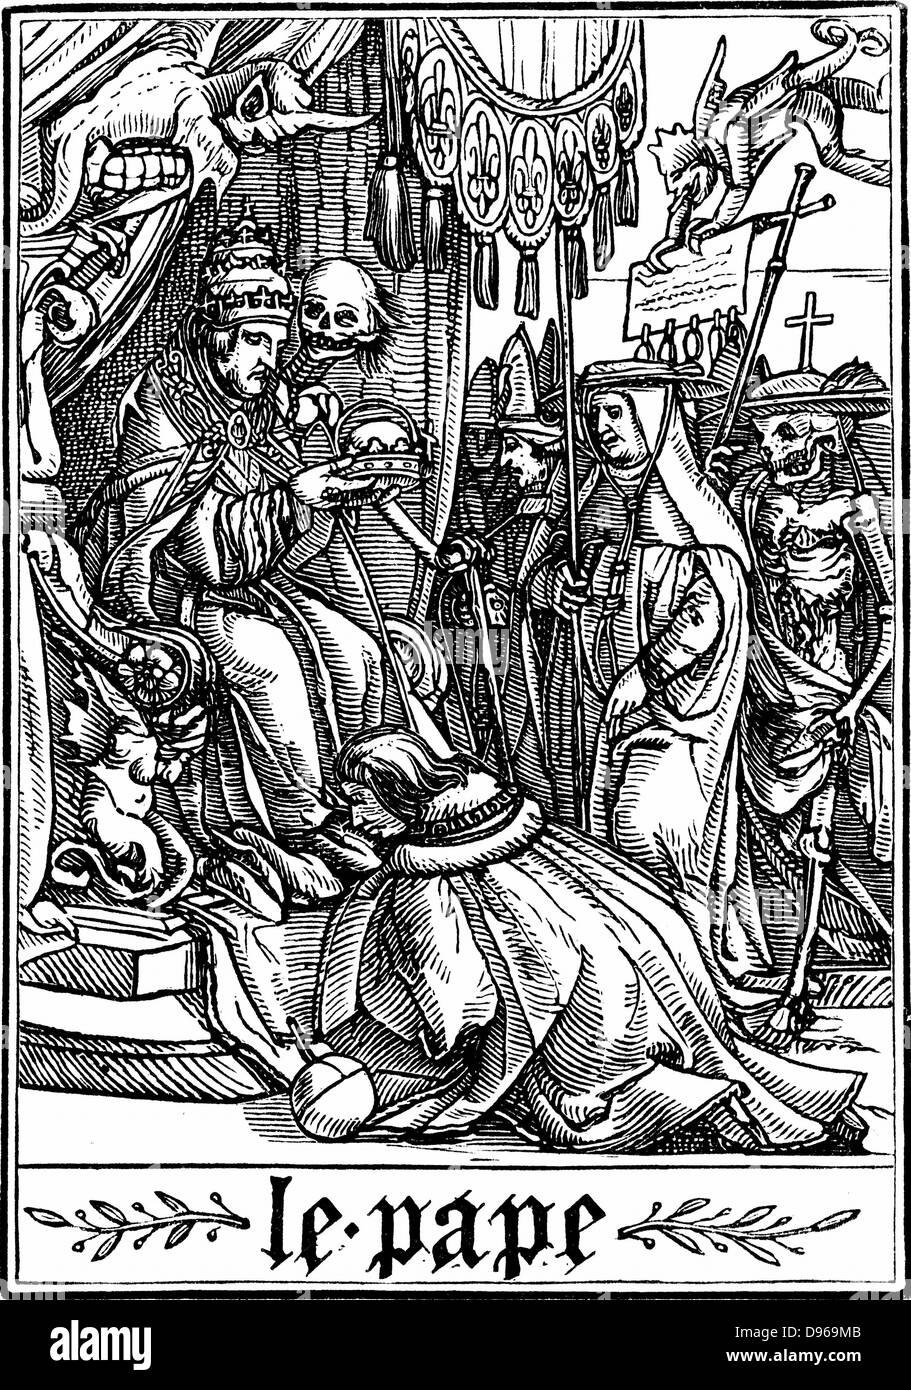 Le Pape a visité par la mort. De Hans Holbein le Jeune 'Les Simulachres de la Mort" (La danse de mort, Totentanz). Série d'illustrations à la suite de la tradition de la morale médiévale joue . Gravure sur bois, 1538 Banque D'Images